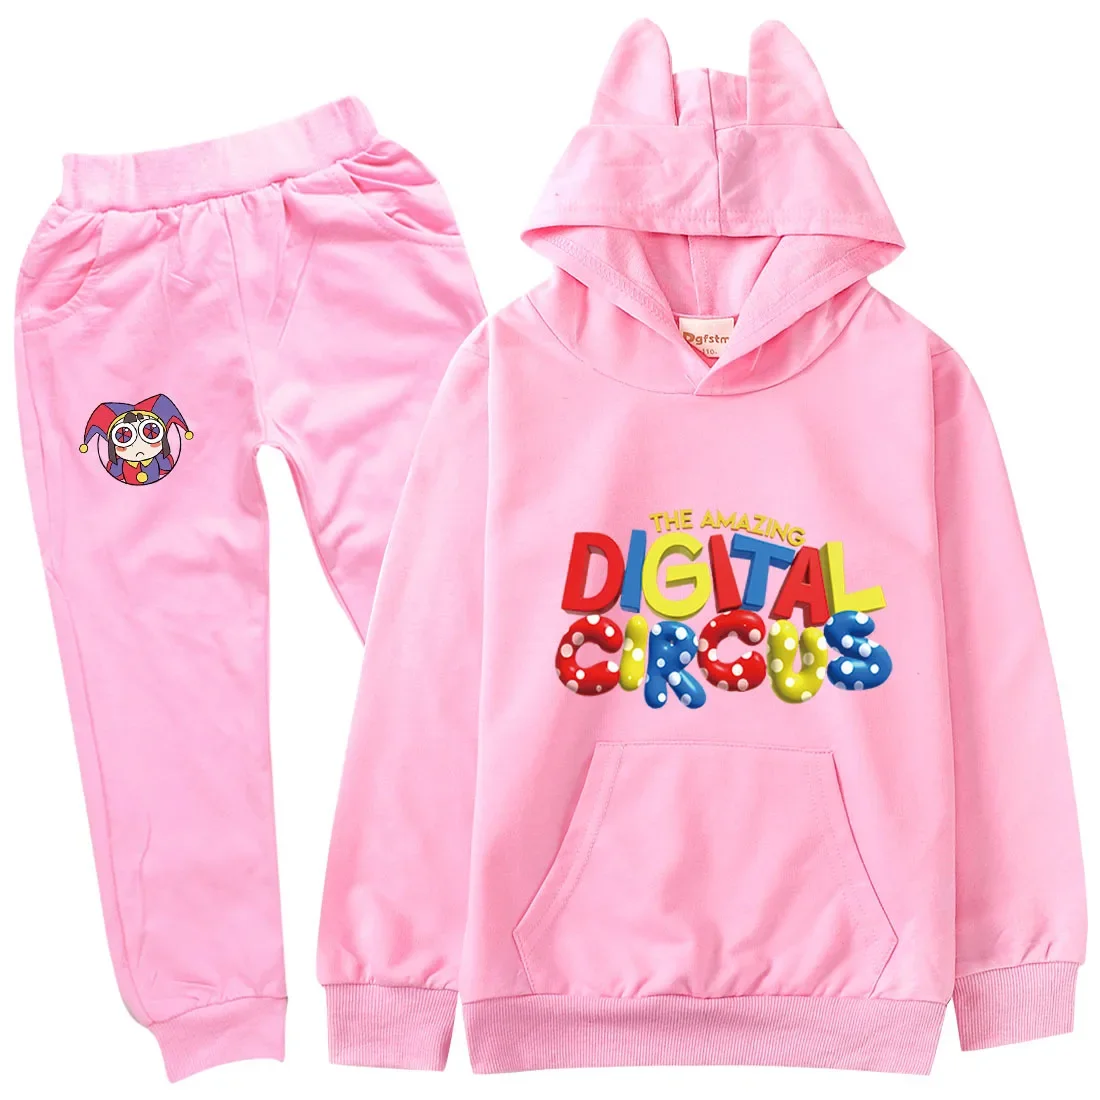 Новая одежда The Amazing Digital Circus Pomni Jax, детская толстовка и свитшоты, штаны, комплект из 2 предметов, одежда для маленьких девочек, комплекты одежды для мальчиков - 1